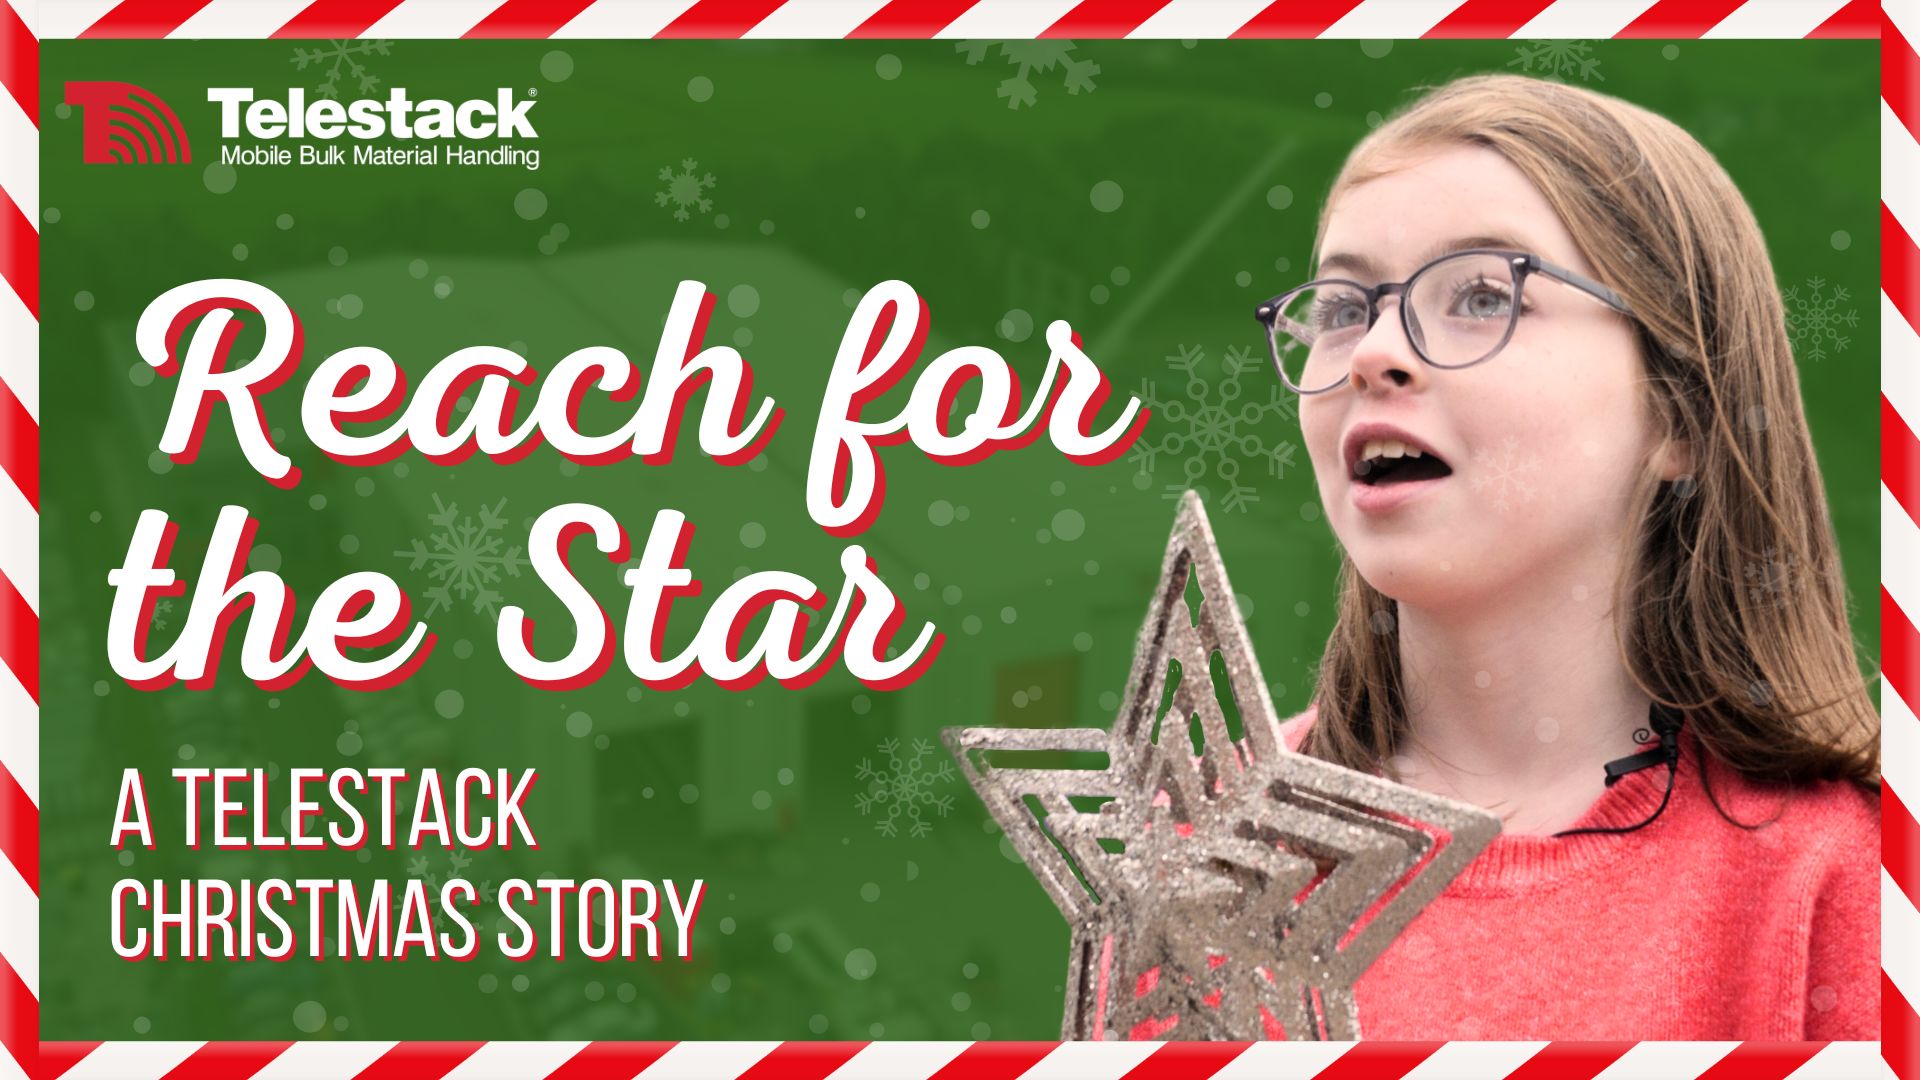 A Telestack Christmas Story by BlueSky Video Marketing